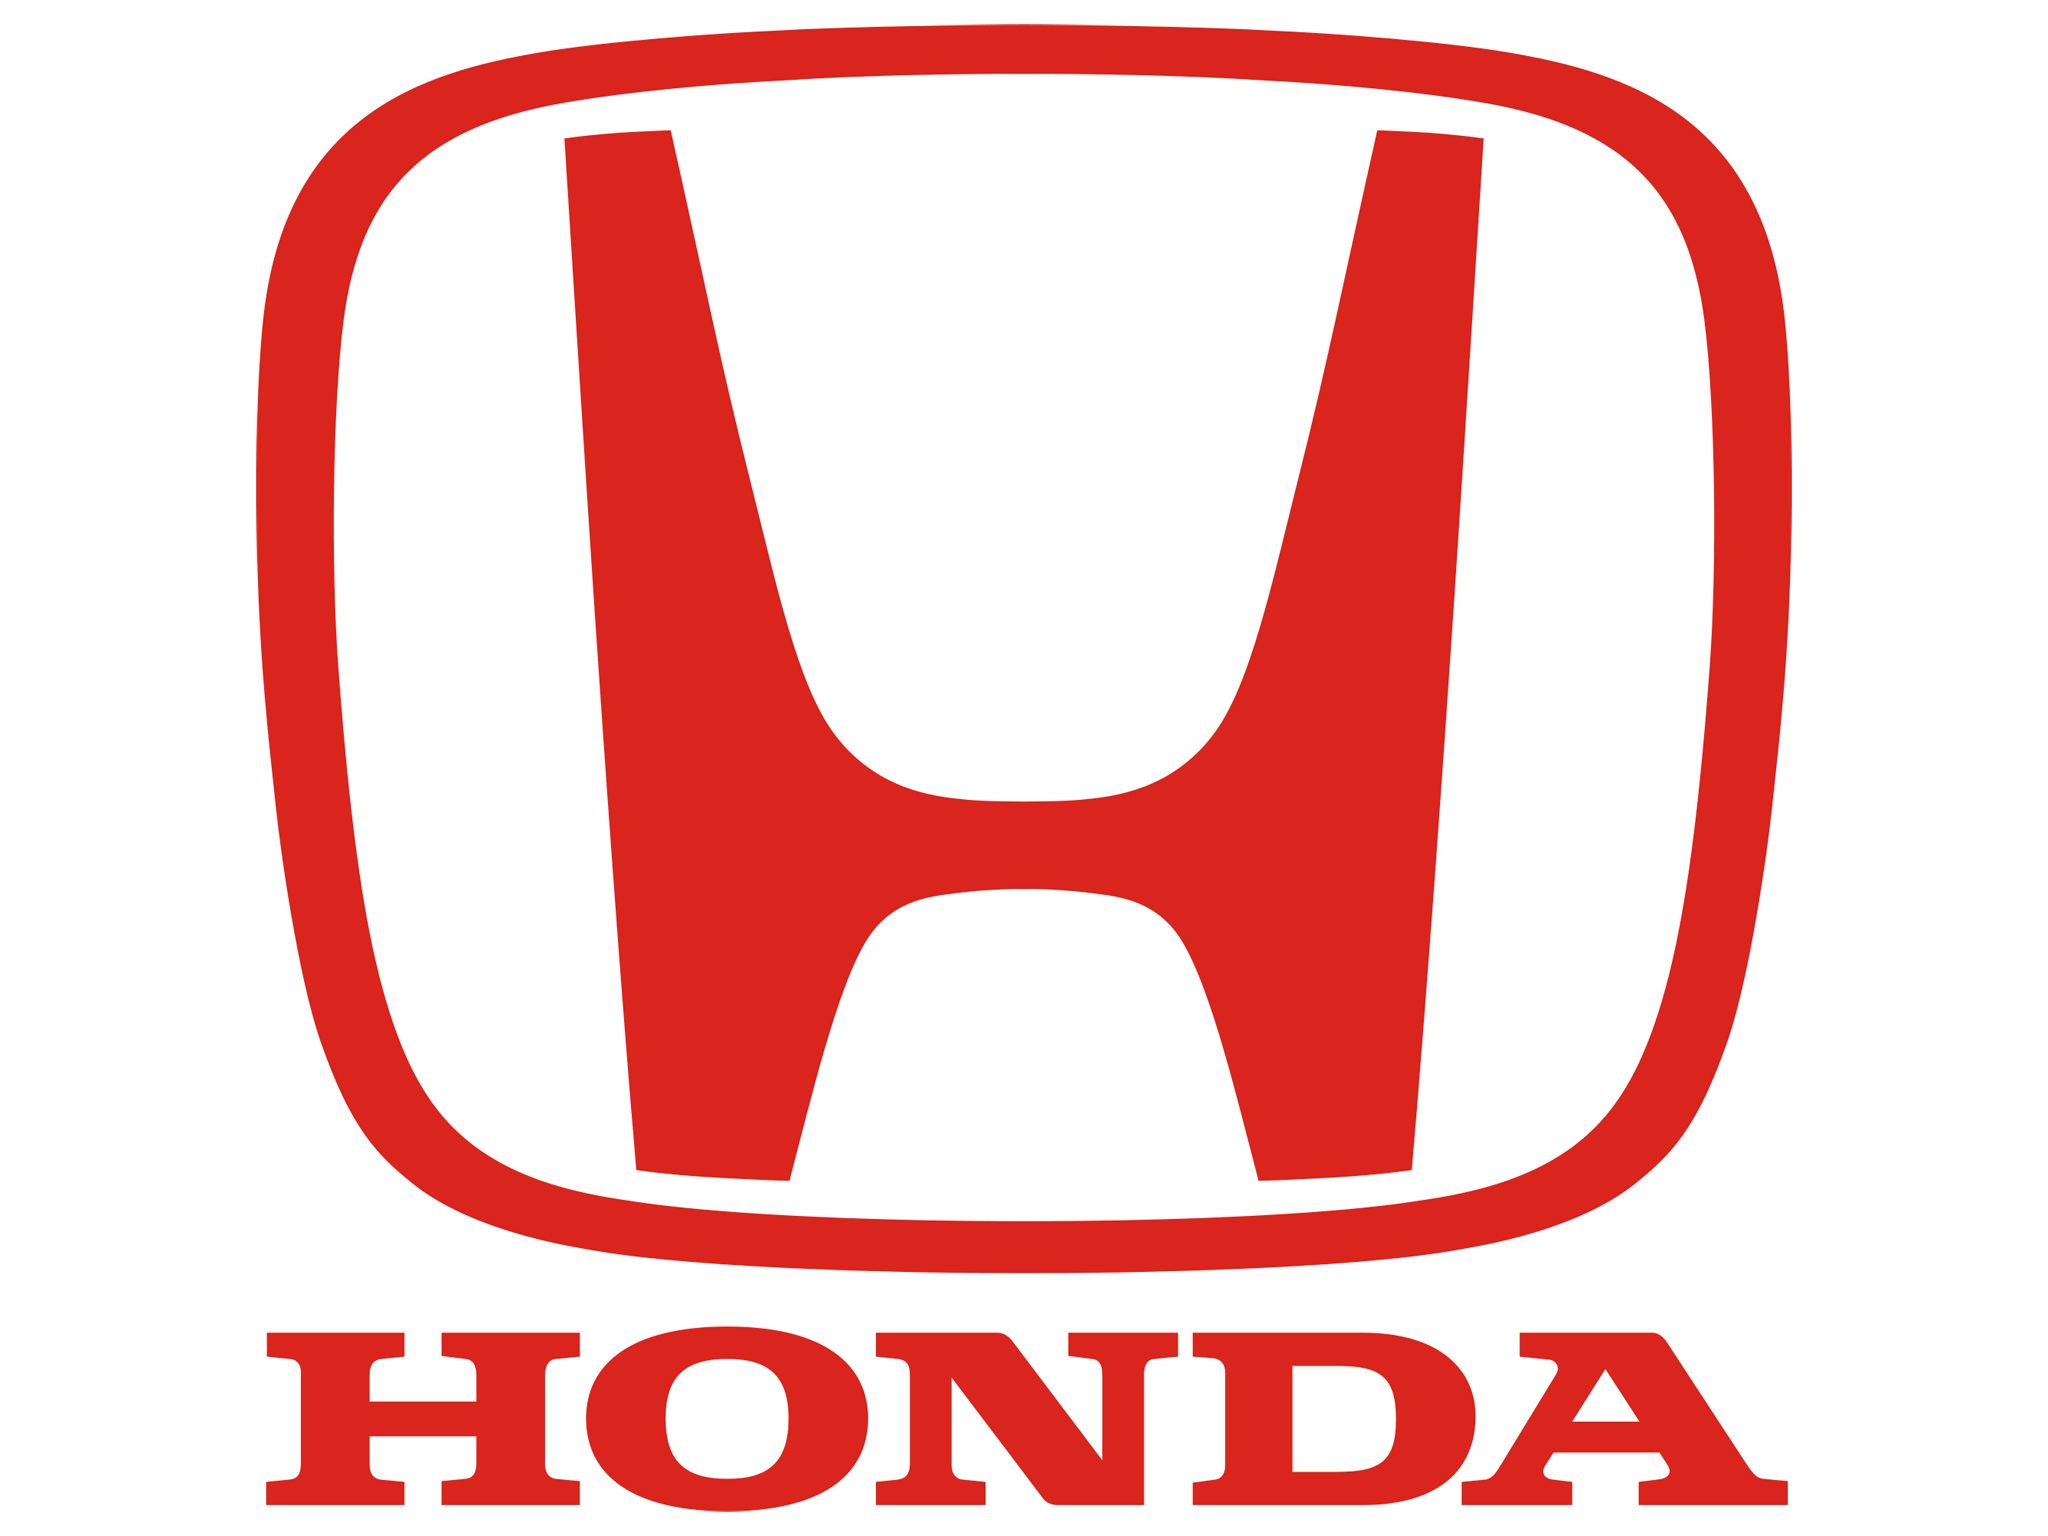 Download logo de honda clipart 10 free Cliparts | Download images ...